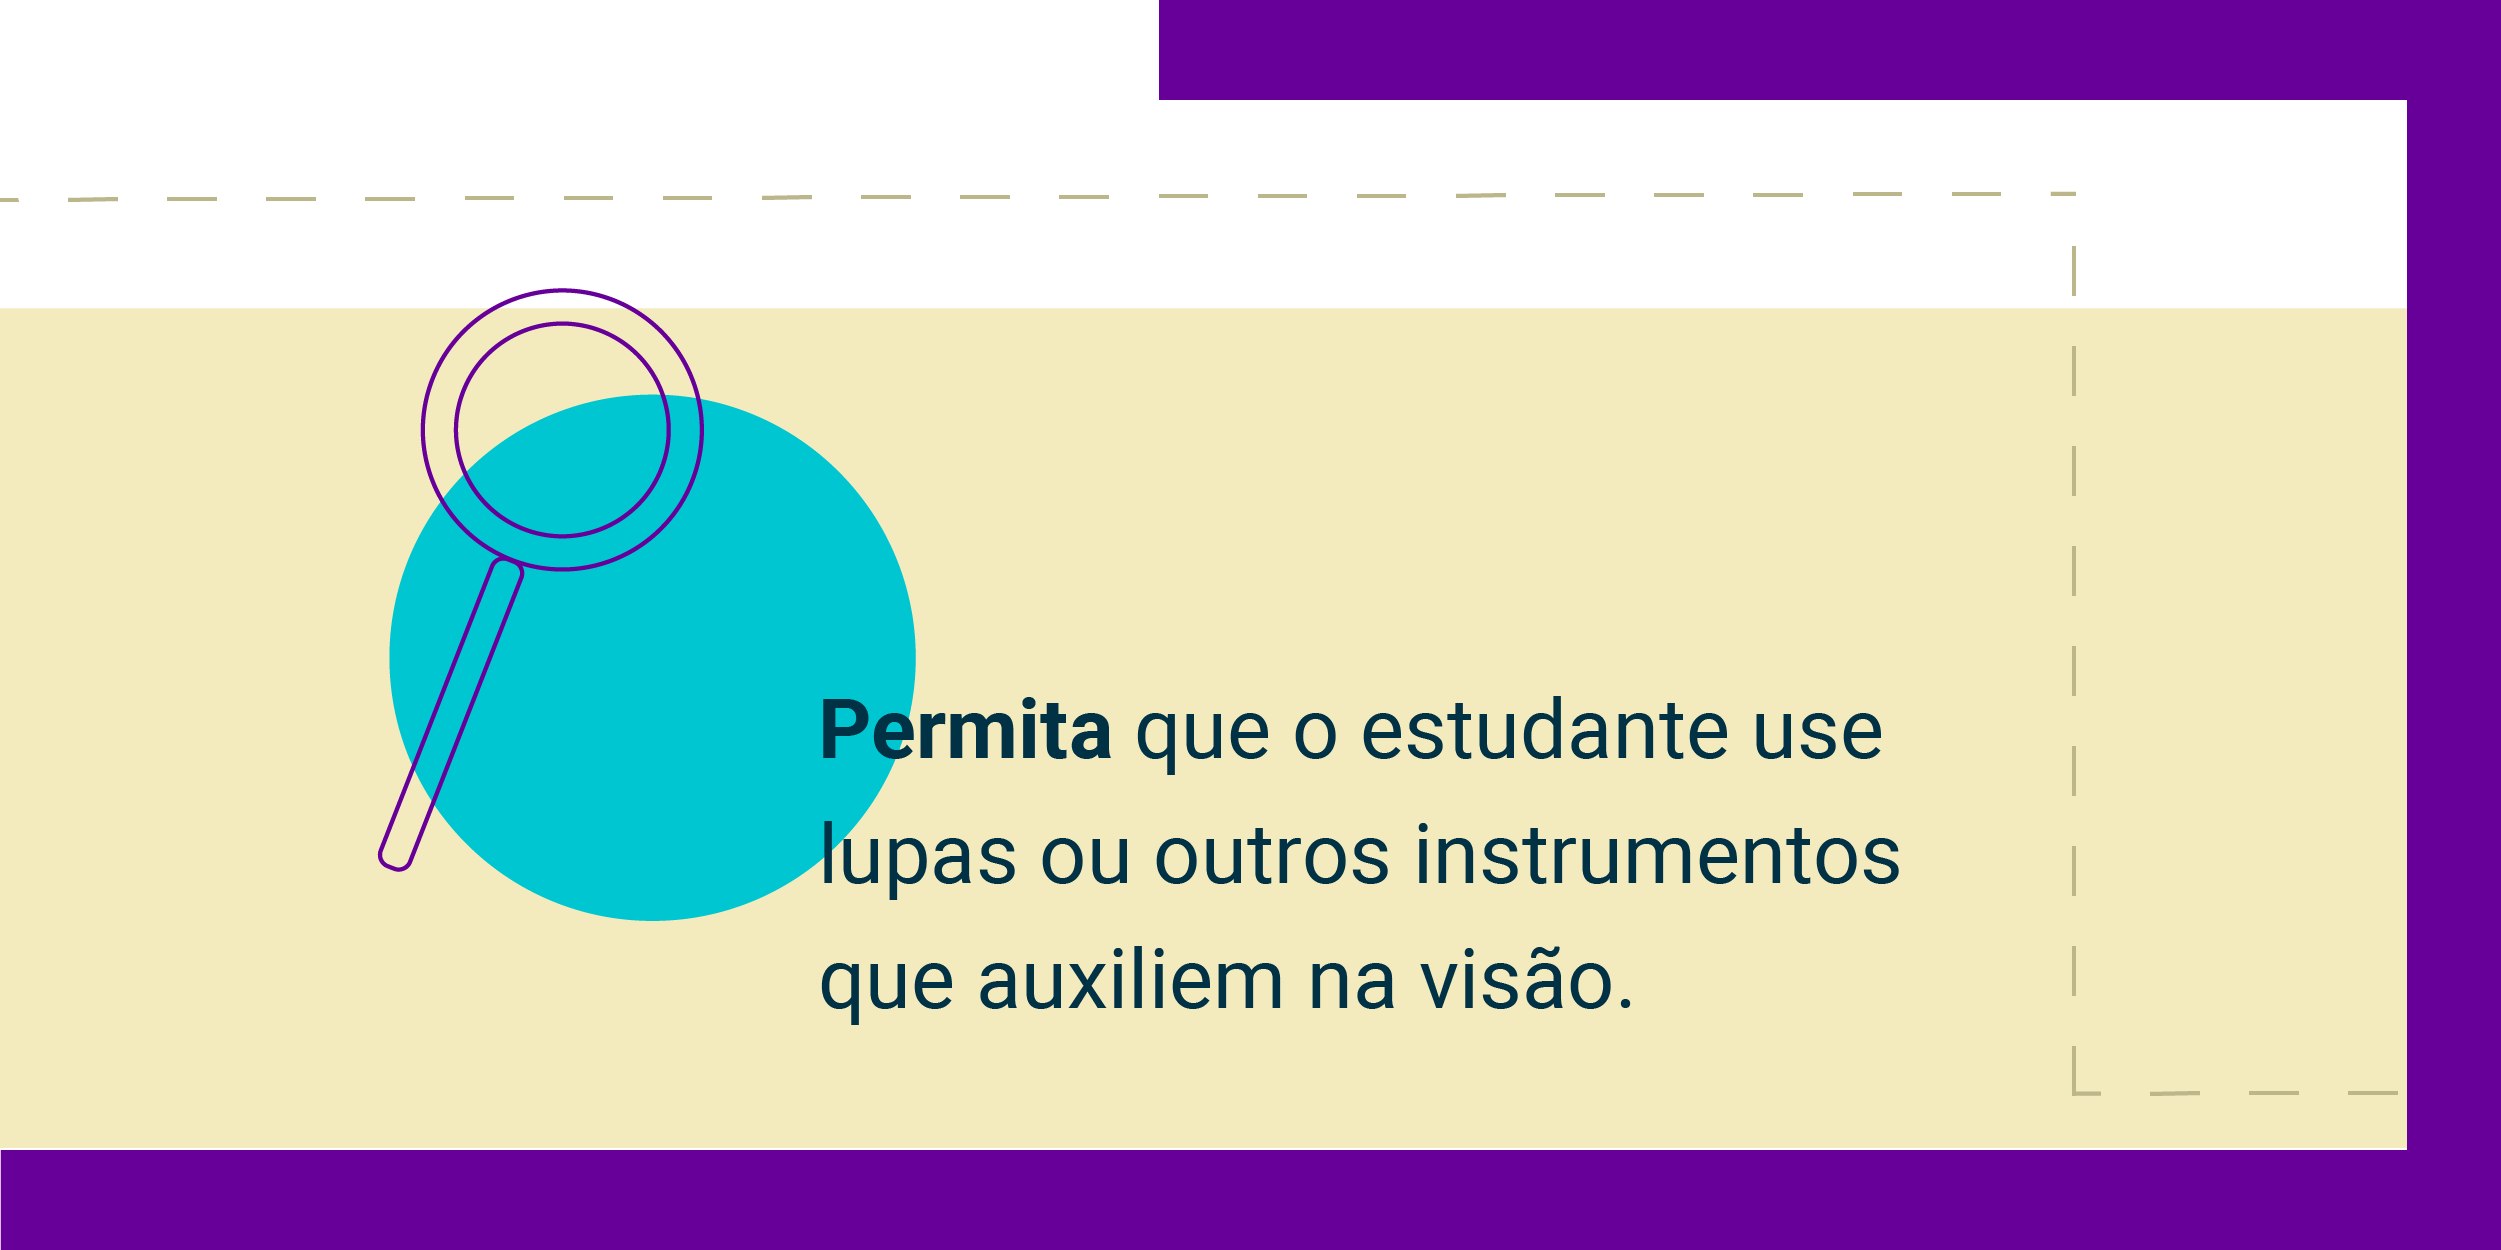 Imagem com a frase Permita que o estudante use lupas ou outros instrumentos que auxiliem na visão.